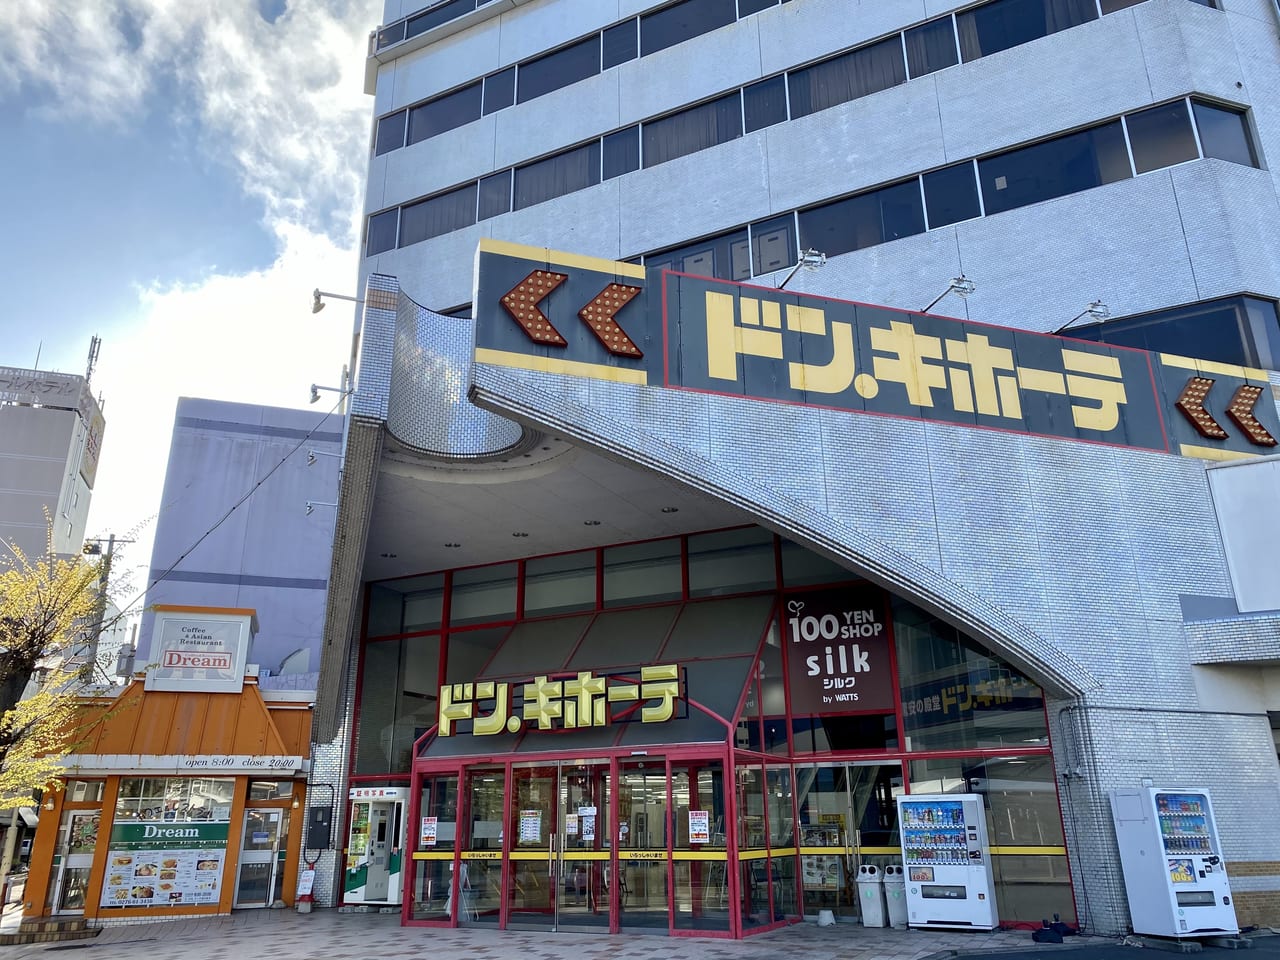 太田市 ドン キホーテ太田店内のゲームセンター ハピピランド太田店 が4 12に閉店します 号外net 太田市